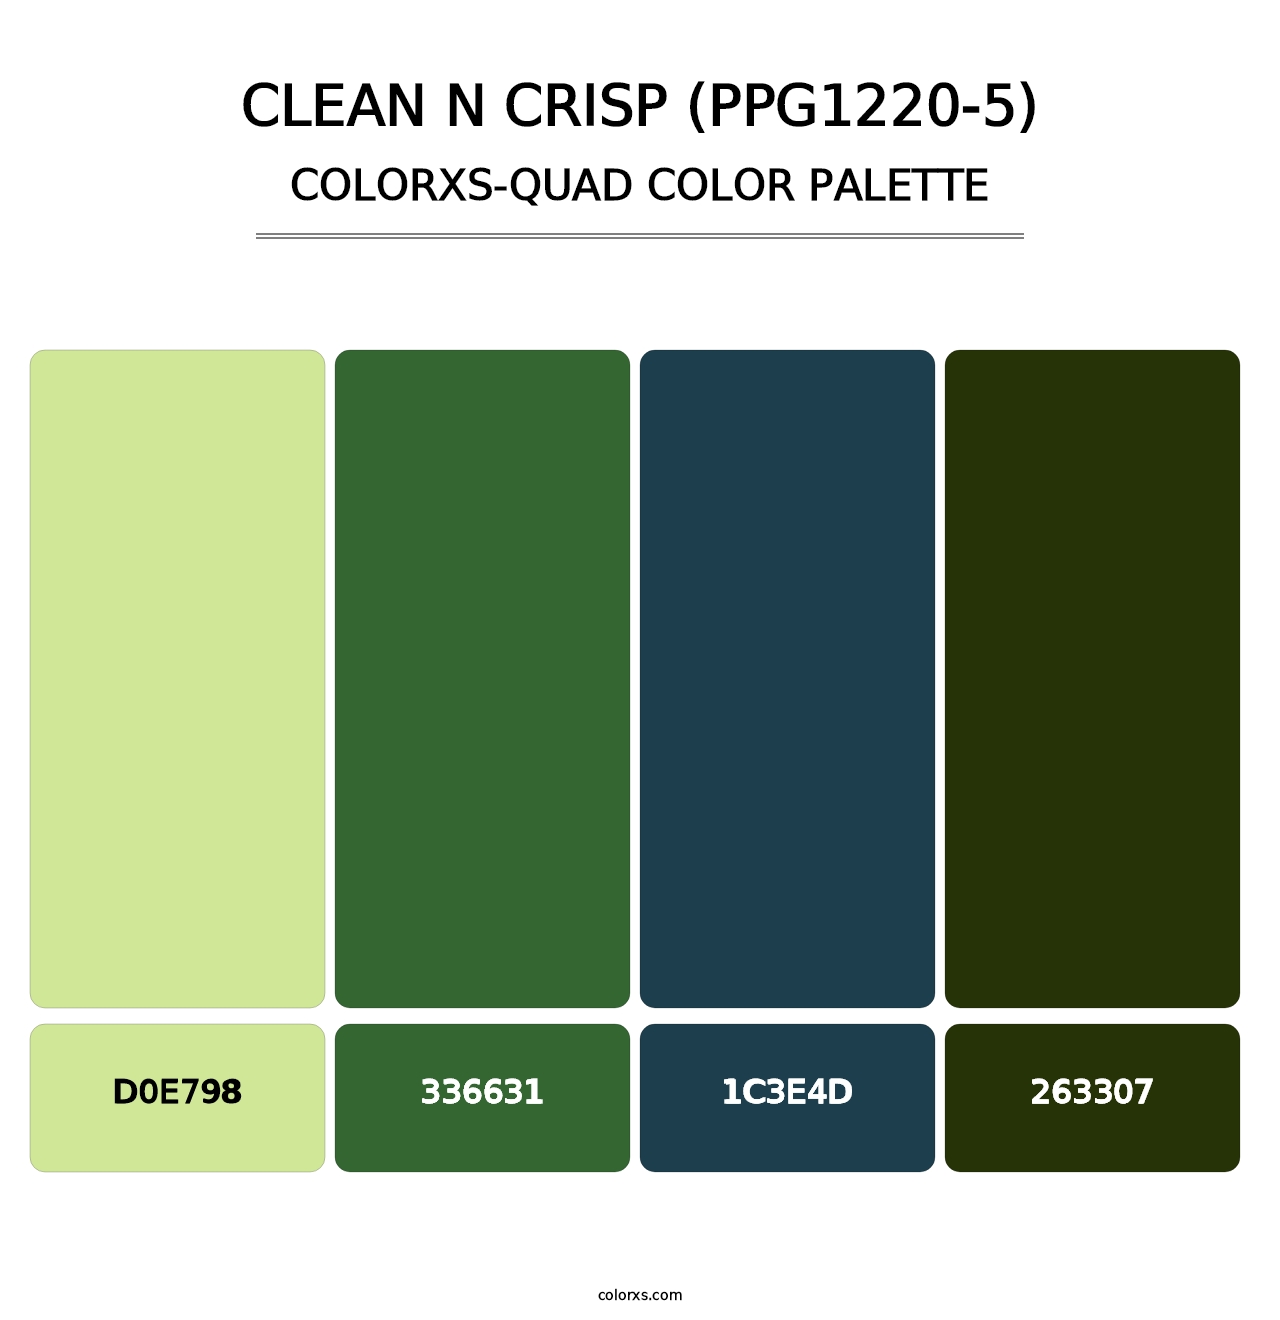 Clean N Crisp (PPG1220-5) - Colorxs Quad Palette